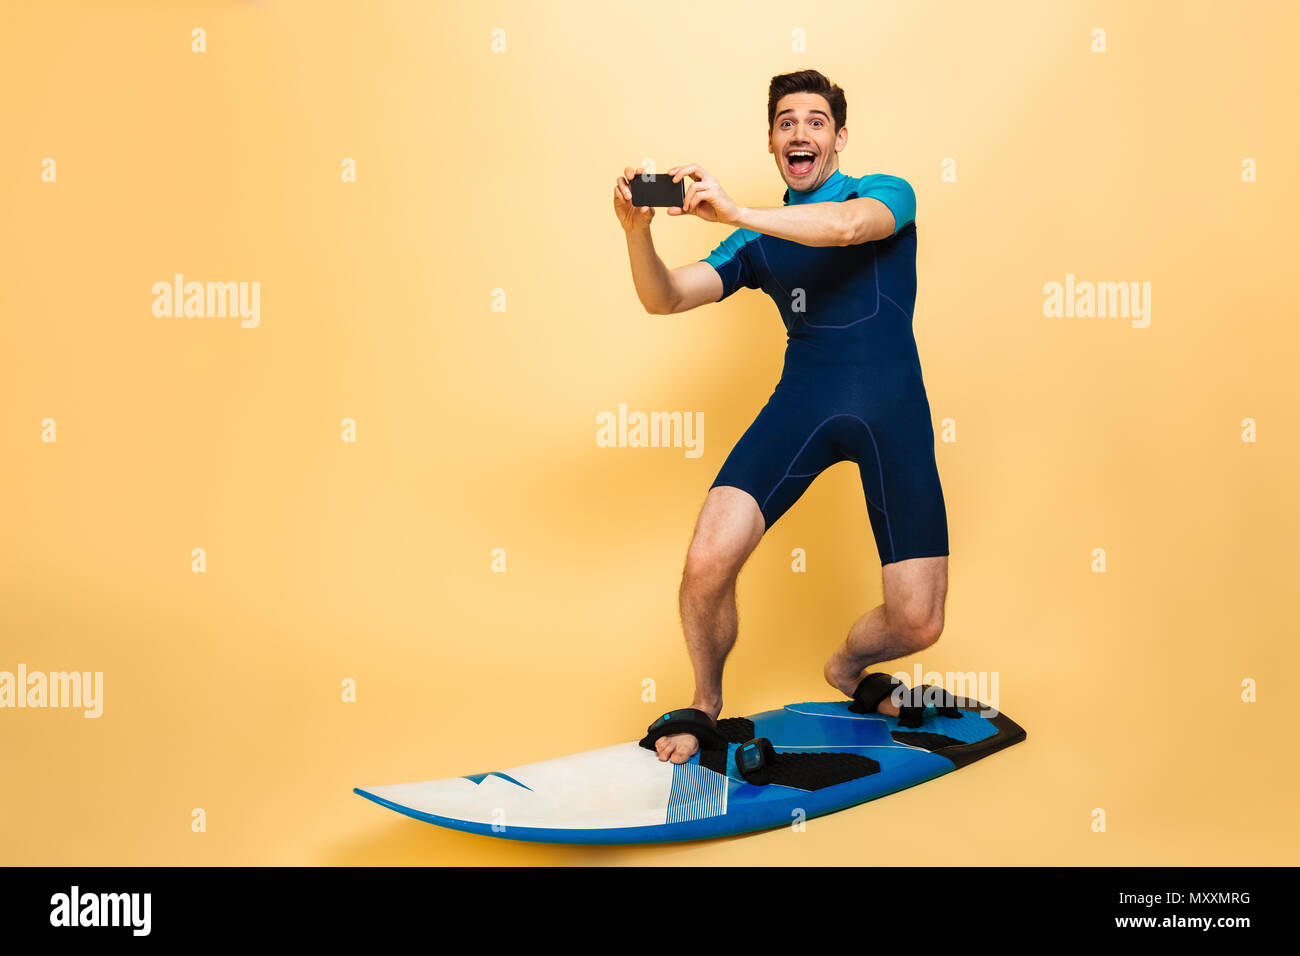 In voller Länge Porträt von einem Aufgeregten jungen Mann in Badeanzug bekleidet sprechen ein Bild mit Handy beim Surfen auf einem Brett über Gelb bac isoliert Stockfoto